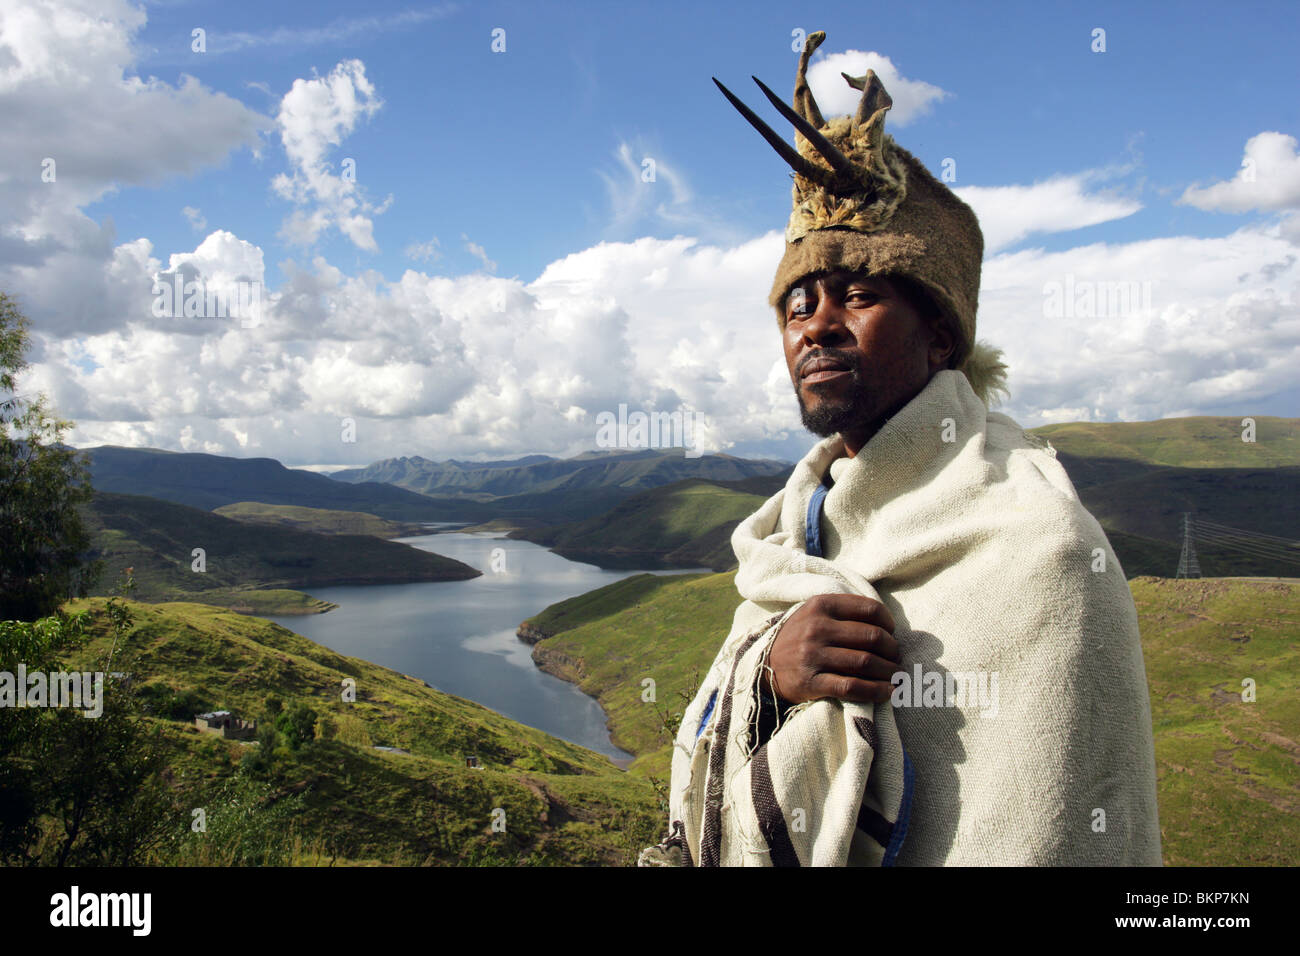 Chef de village dans son pansement traditionnel au-dessus du lac du barrage de Mohale dans les hautes terres du Lesotho Banque D'Images